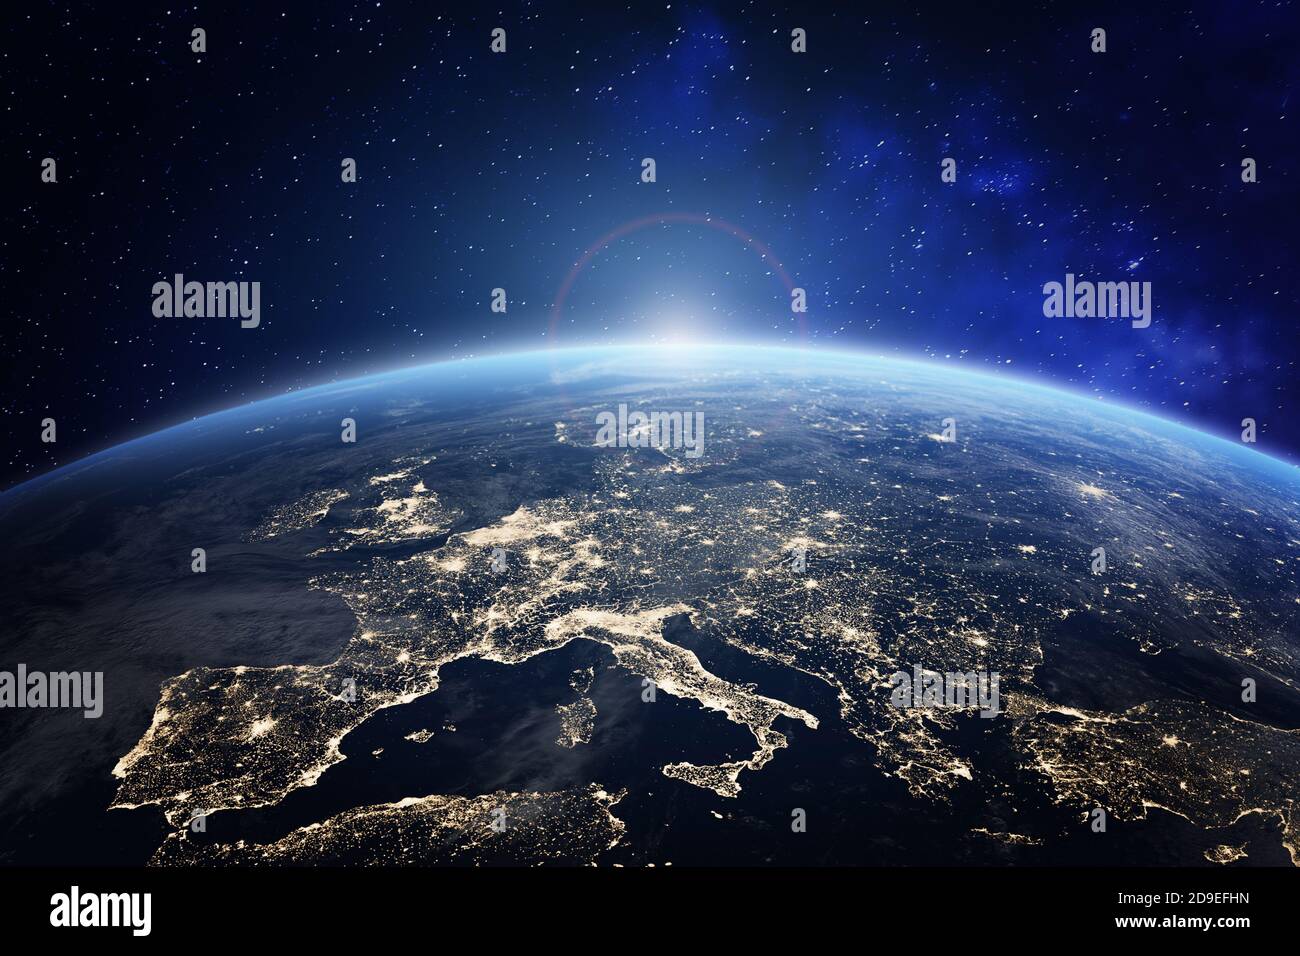 Pianeta Terra vista dallo spazio con le luci della città in Europa. Mondo con alba. Immagine concettuale per il business globale o il tecnolo europeo della comunicazione Foto Stock